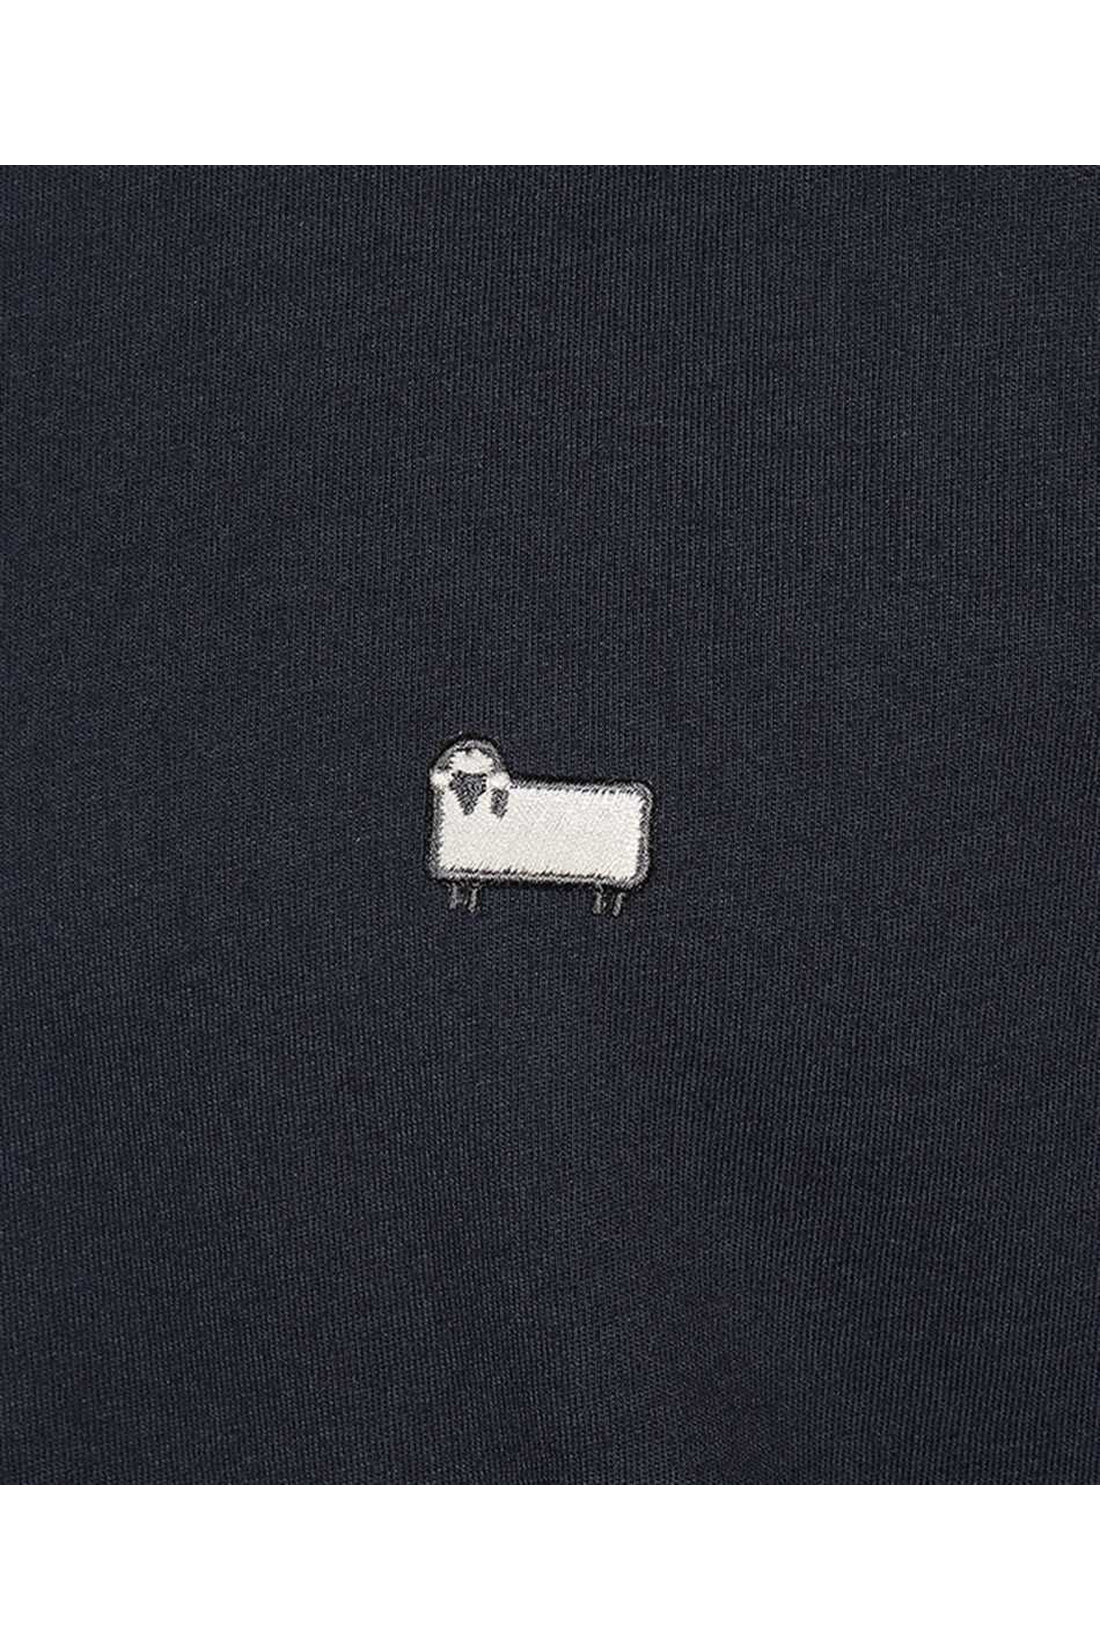 Woolrich-OUTLET-SALE-Cotton crew-neck T-shirt-ARCHIVIST